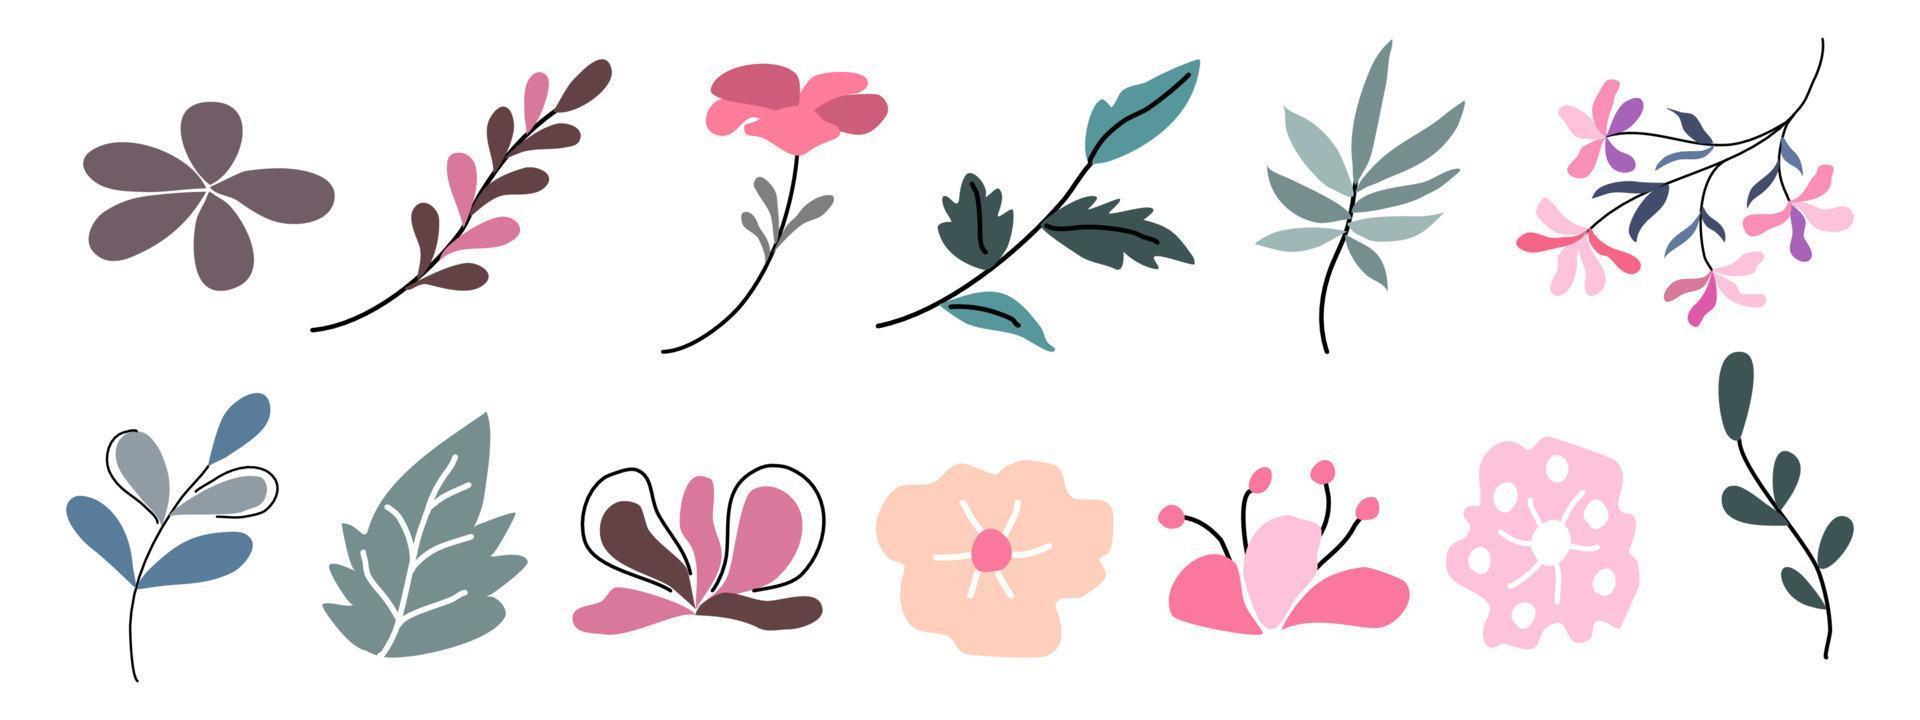 blommor och bladelement designade i doodle-stil för bokomslag, kort, bakgrunder, ramar, bårder, pappersmönster, tygmönster, dekorationer med vårtema, klippbok och mer. vektor